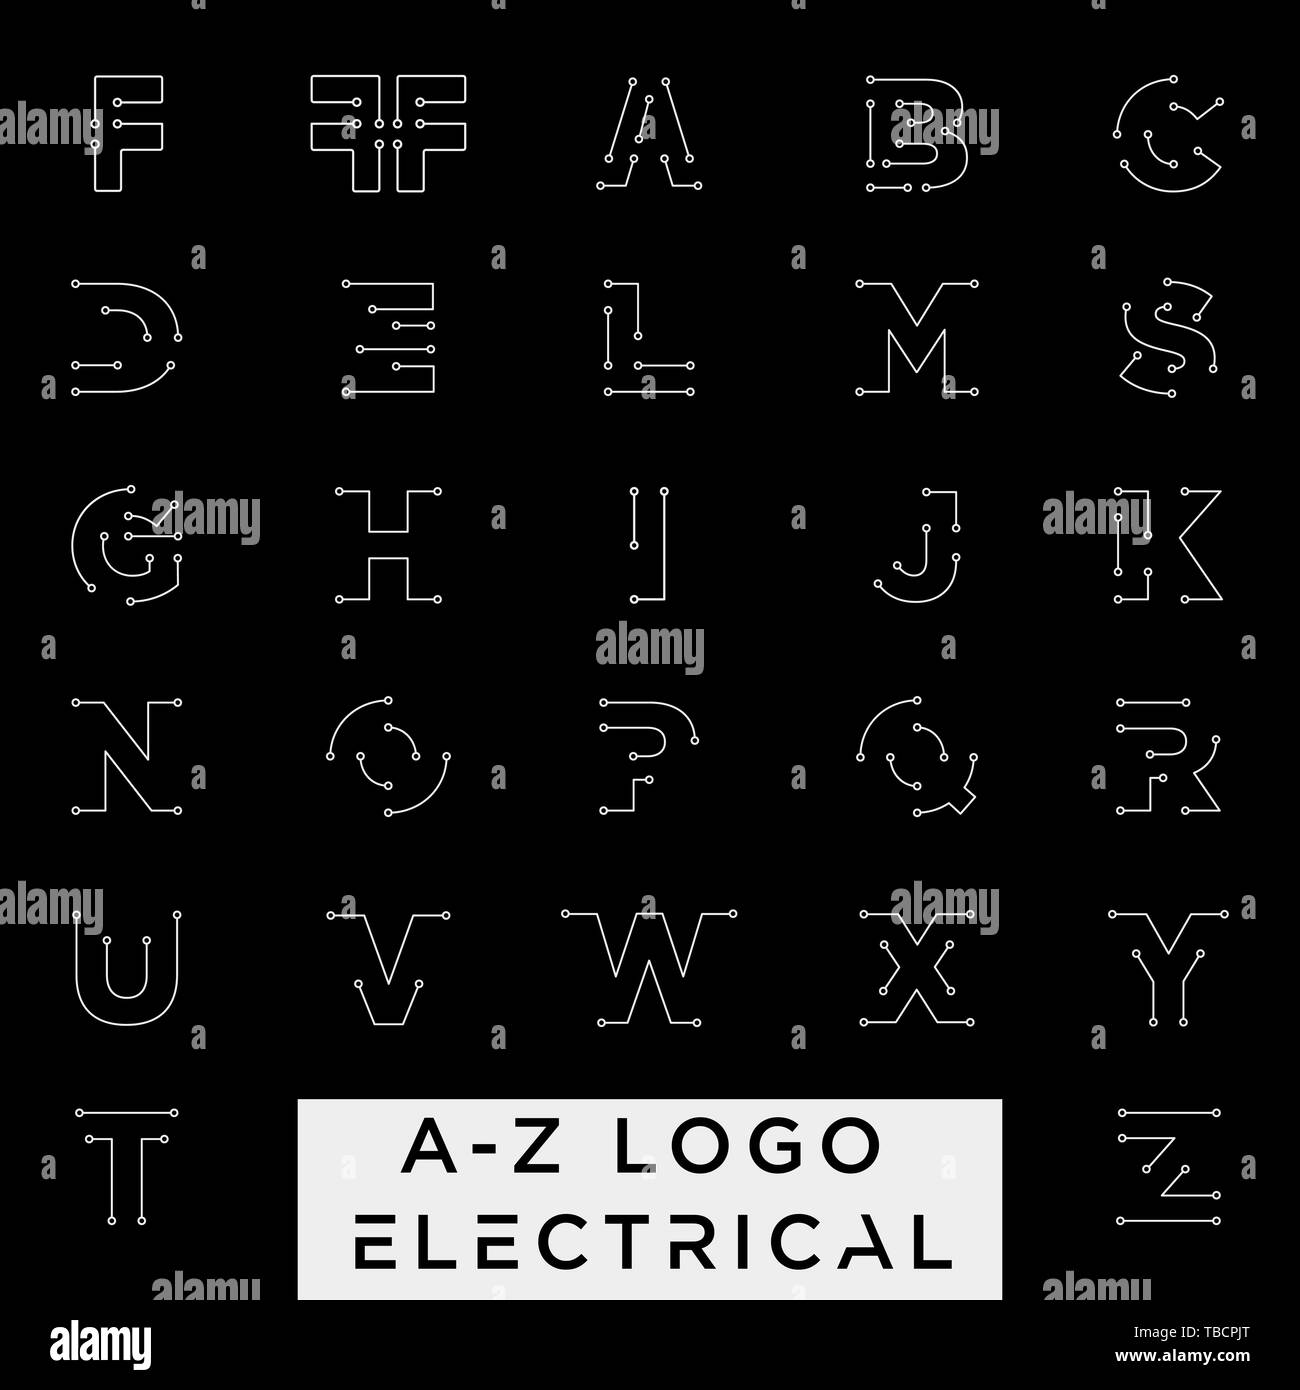 Schließen Sie den elektrischen a-z Logo Design Vektor icon-Element mit Business Card isoliert oder gehören Stock Vektor